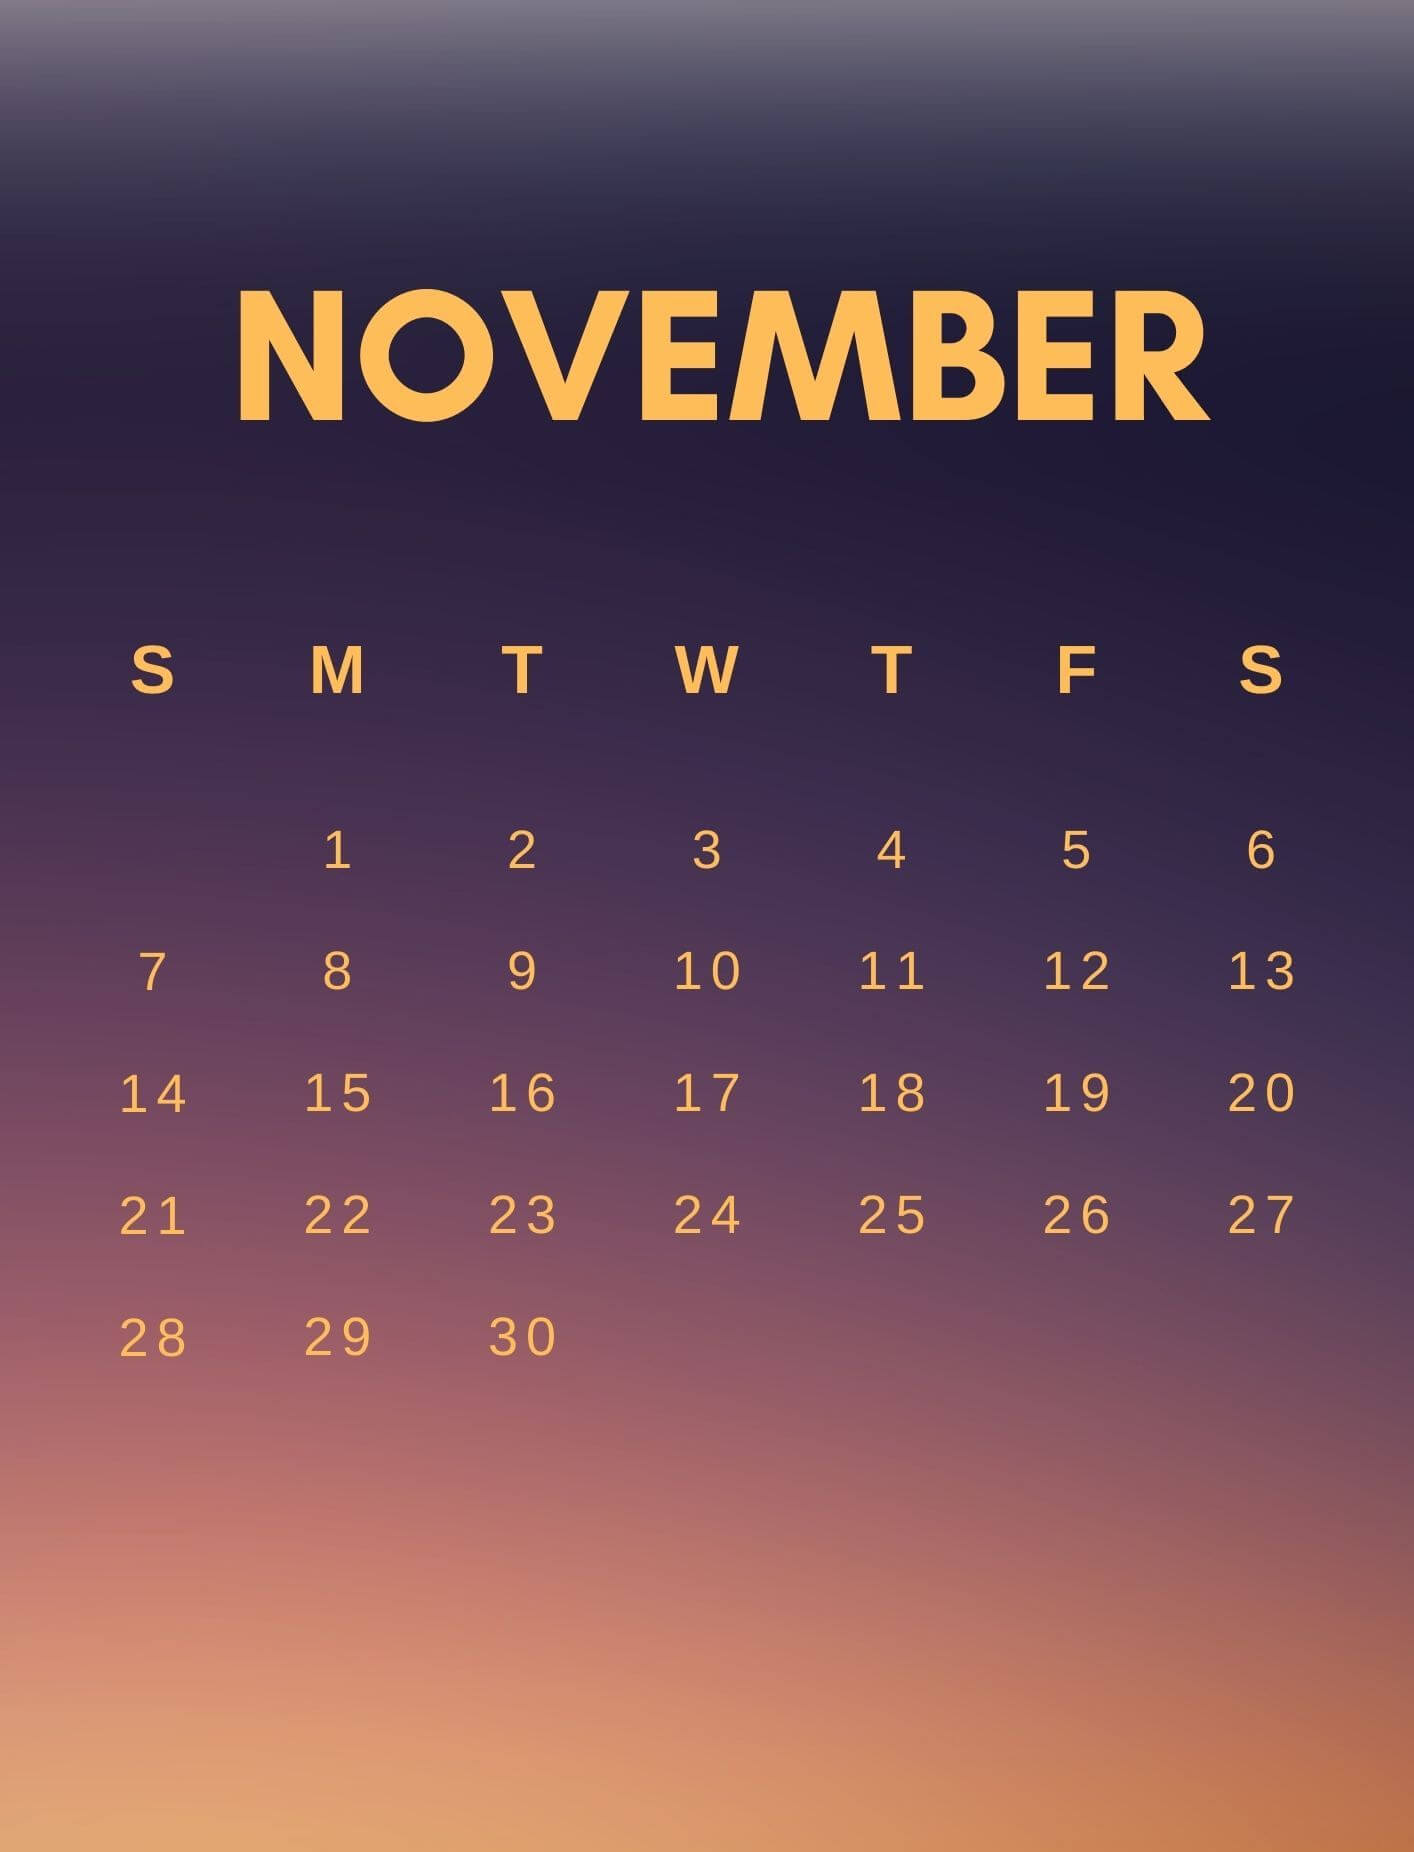 November 2021 Calendar For Mobile Phone